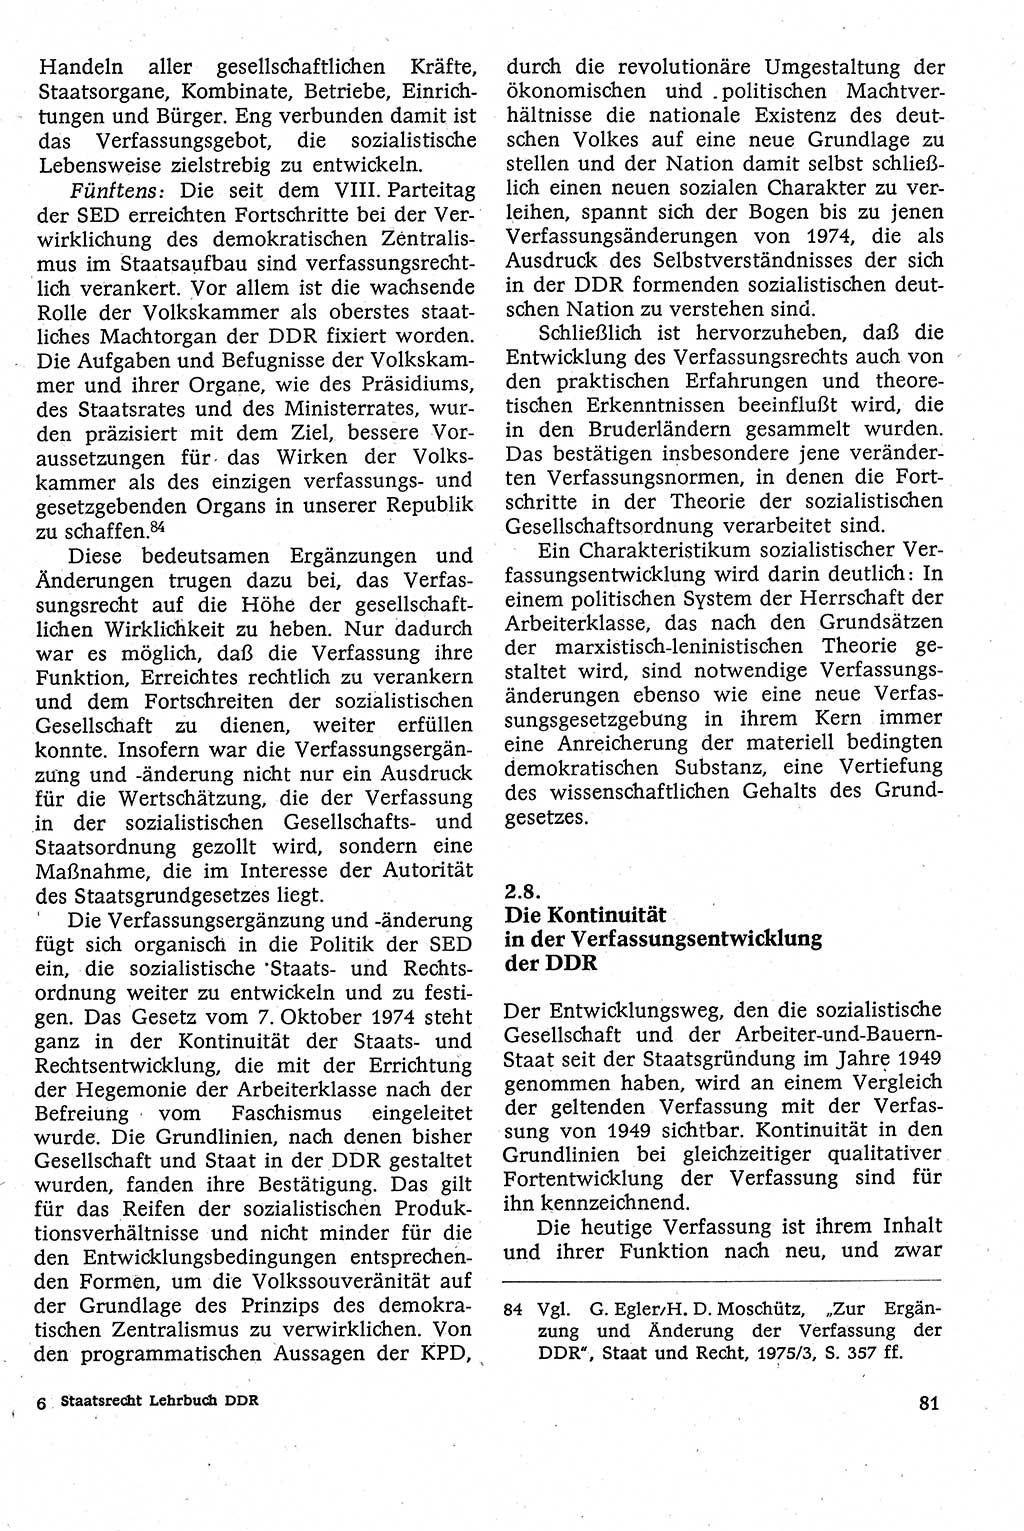 Staatsrecht der DDR [Deutsche Demokratische Republik (DDR)], Lehrbuch 1984, Seite 81 (St.-R. DDR Lb. 1984, S. 81)